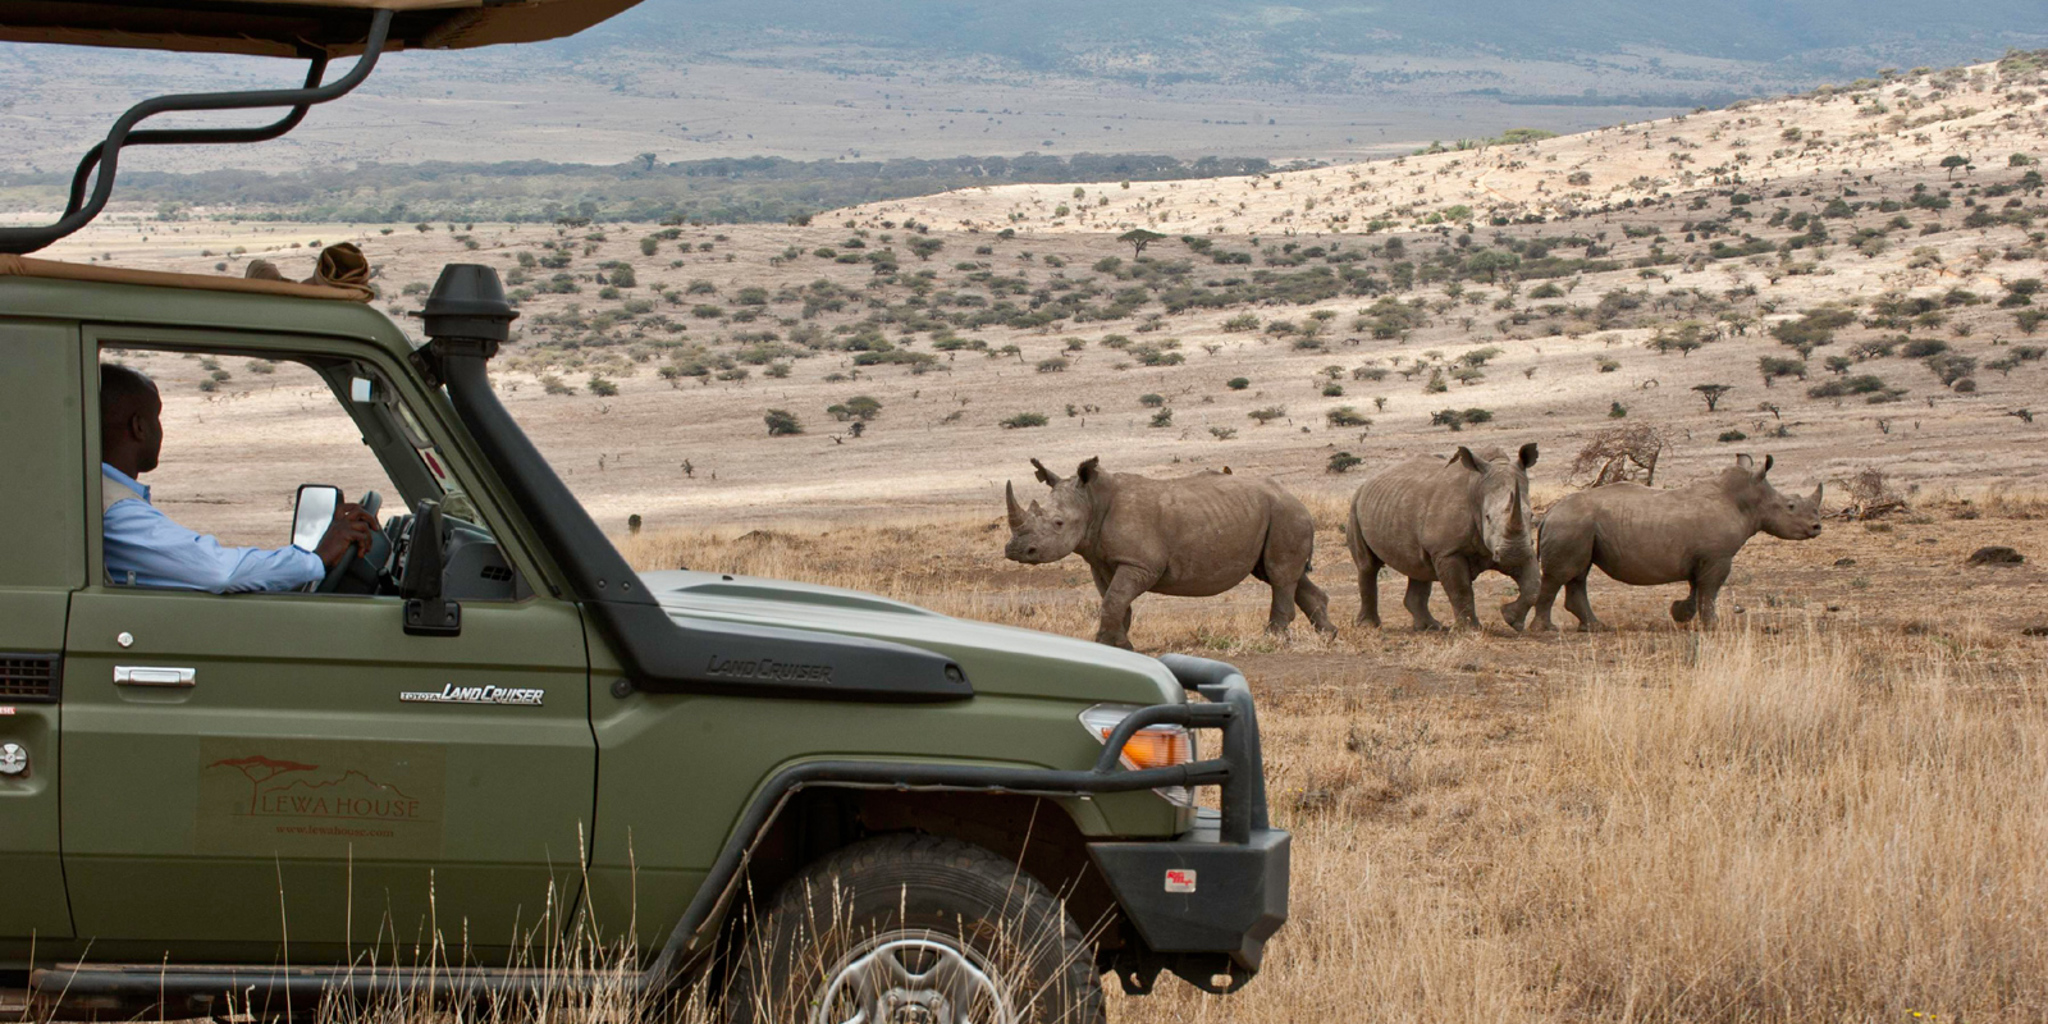 Rhino game drive, Lewa borana landscape safaris, Kenya